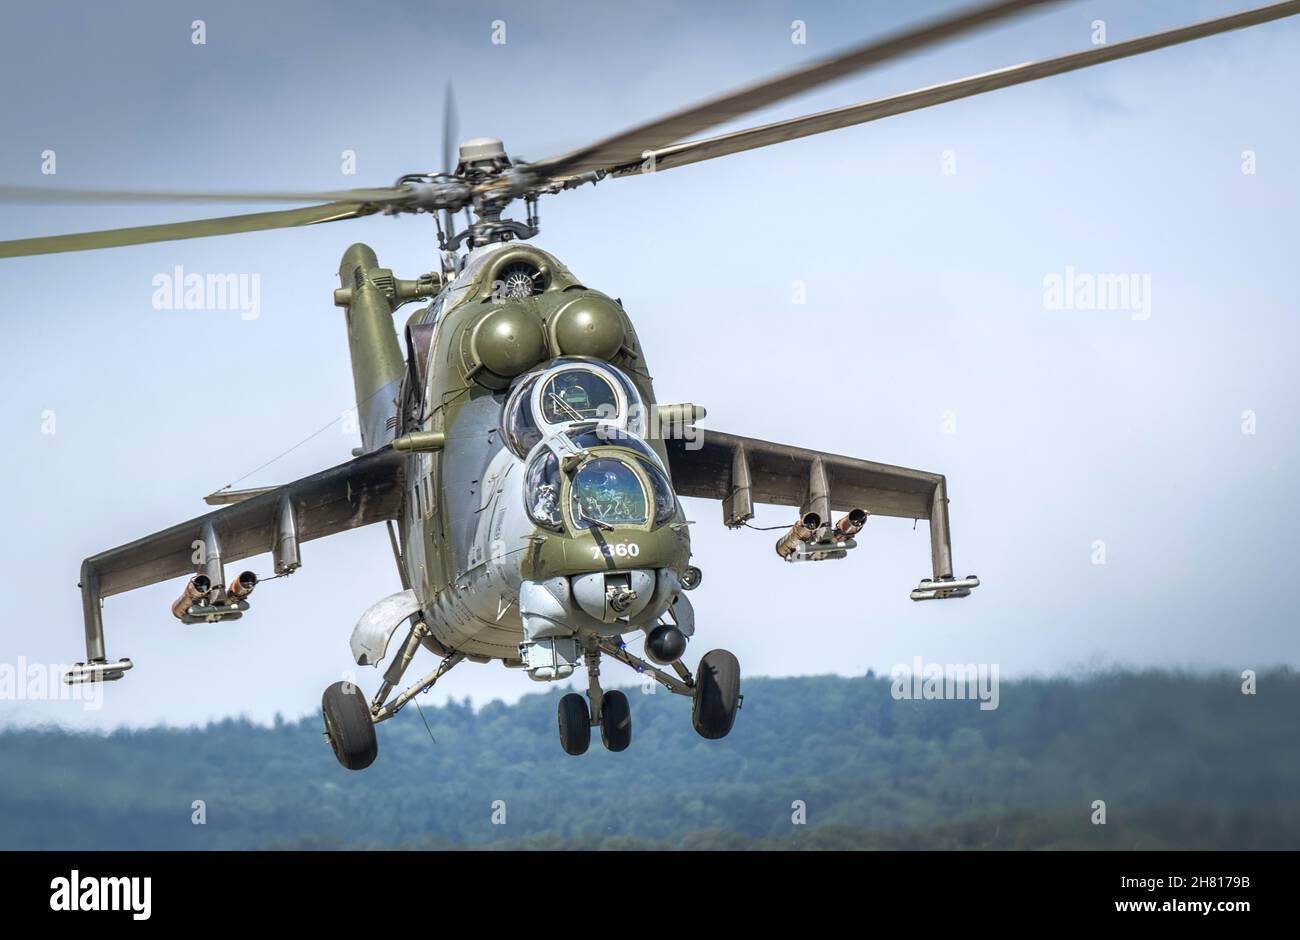 Immagine di un elicottero MIL mi-24 dell'aeronautica ceca. Preso durante il salone SIAF2019 a Sliac, Slovacchia. Foto Stock